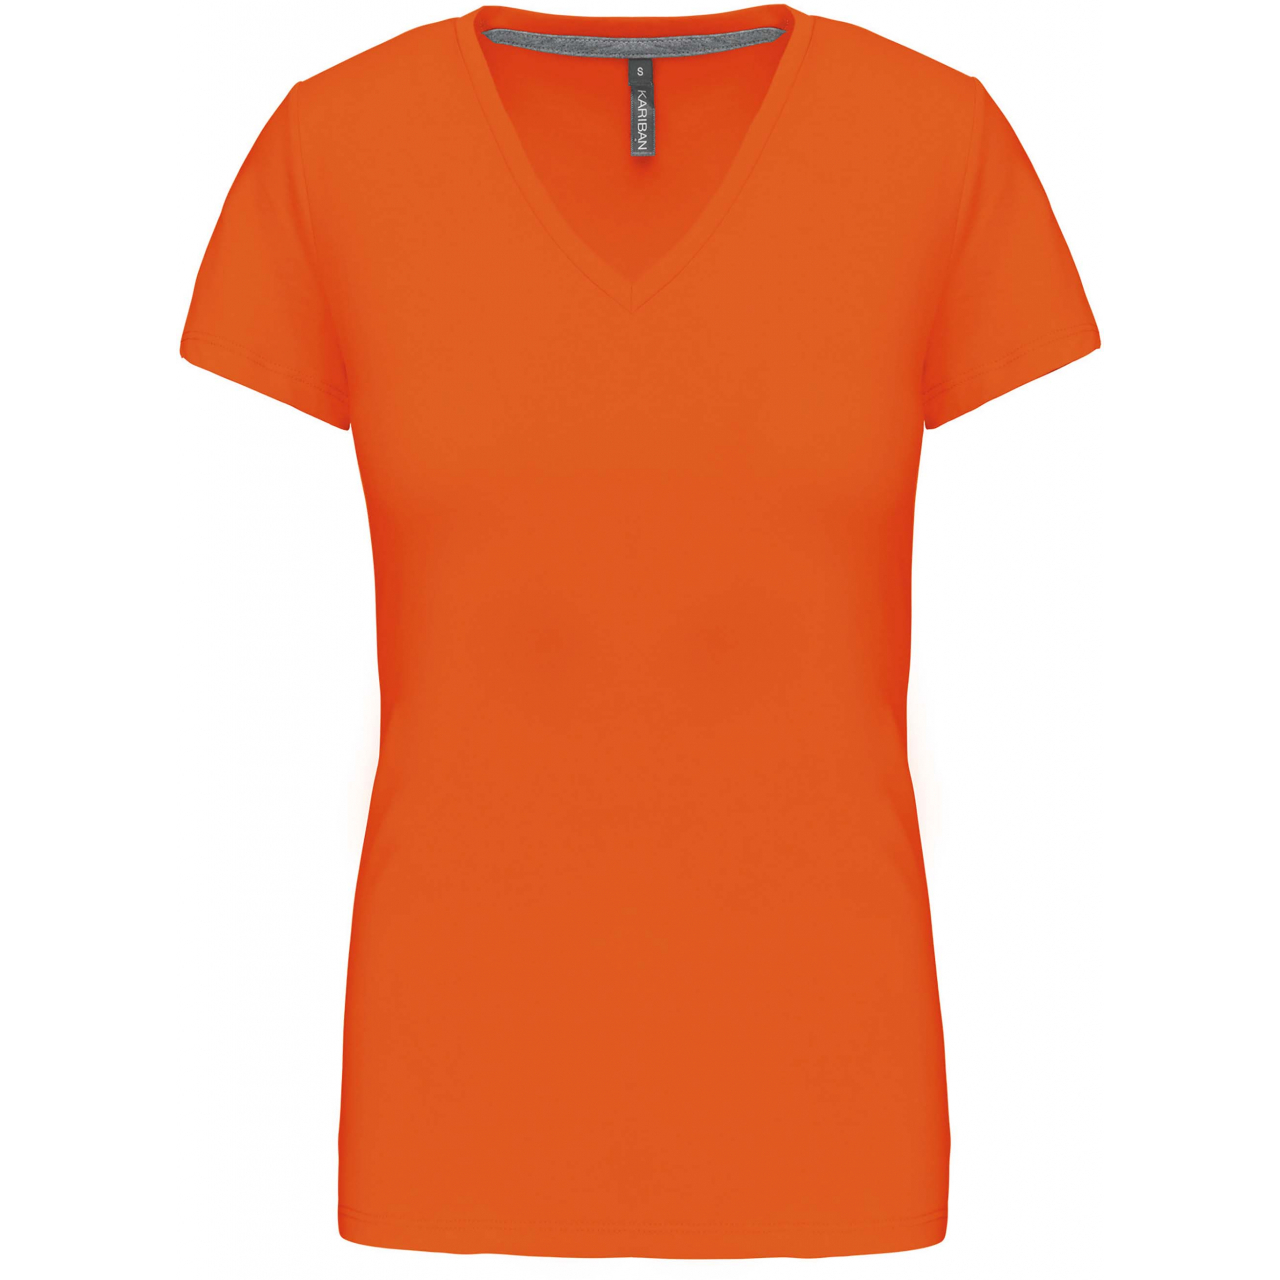 Dámské tričko Kariban V-neck s krátkým rukávem - oranžové, M